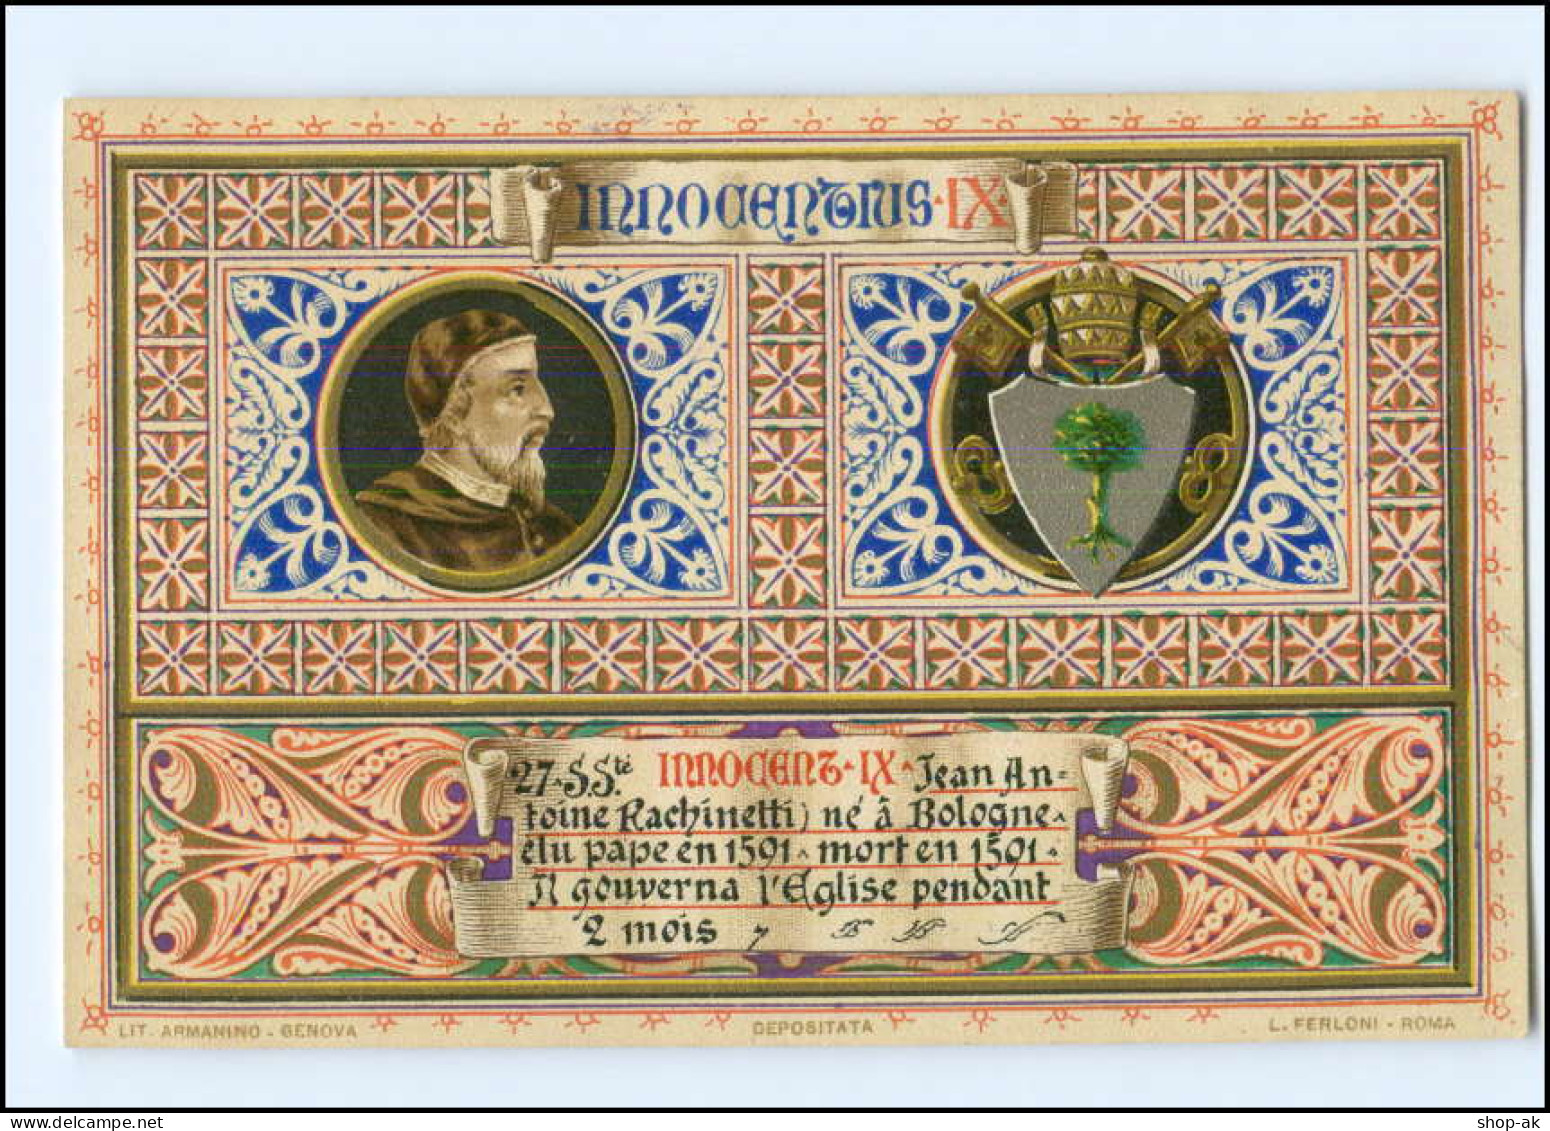 S2232/ Vatikan Papst Innozenz IX  Litho AK  1903  Karte Nr. 27 Vatican  - Vatikanstadt